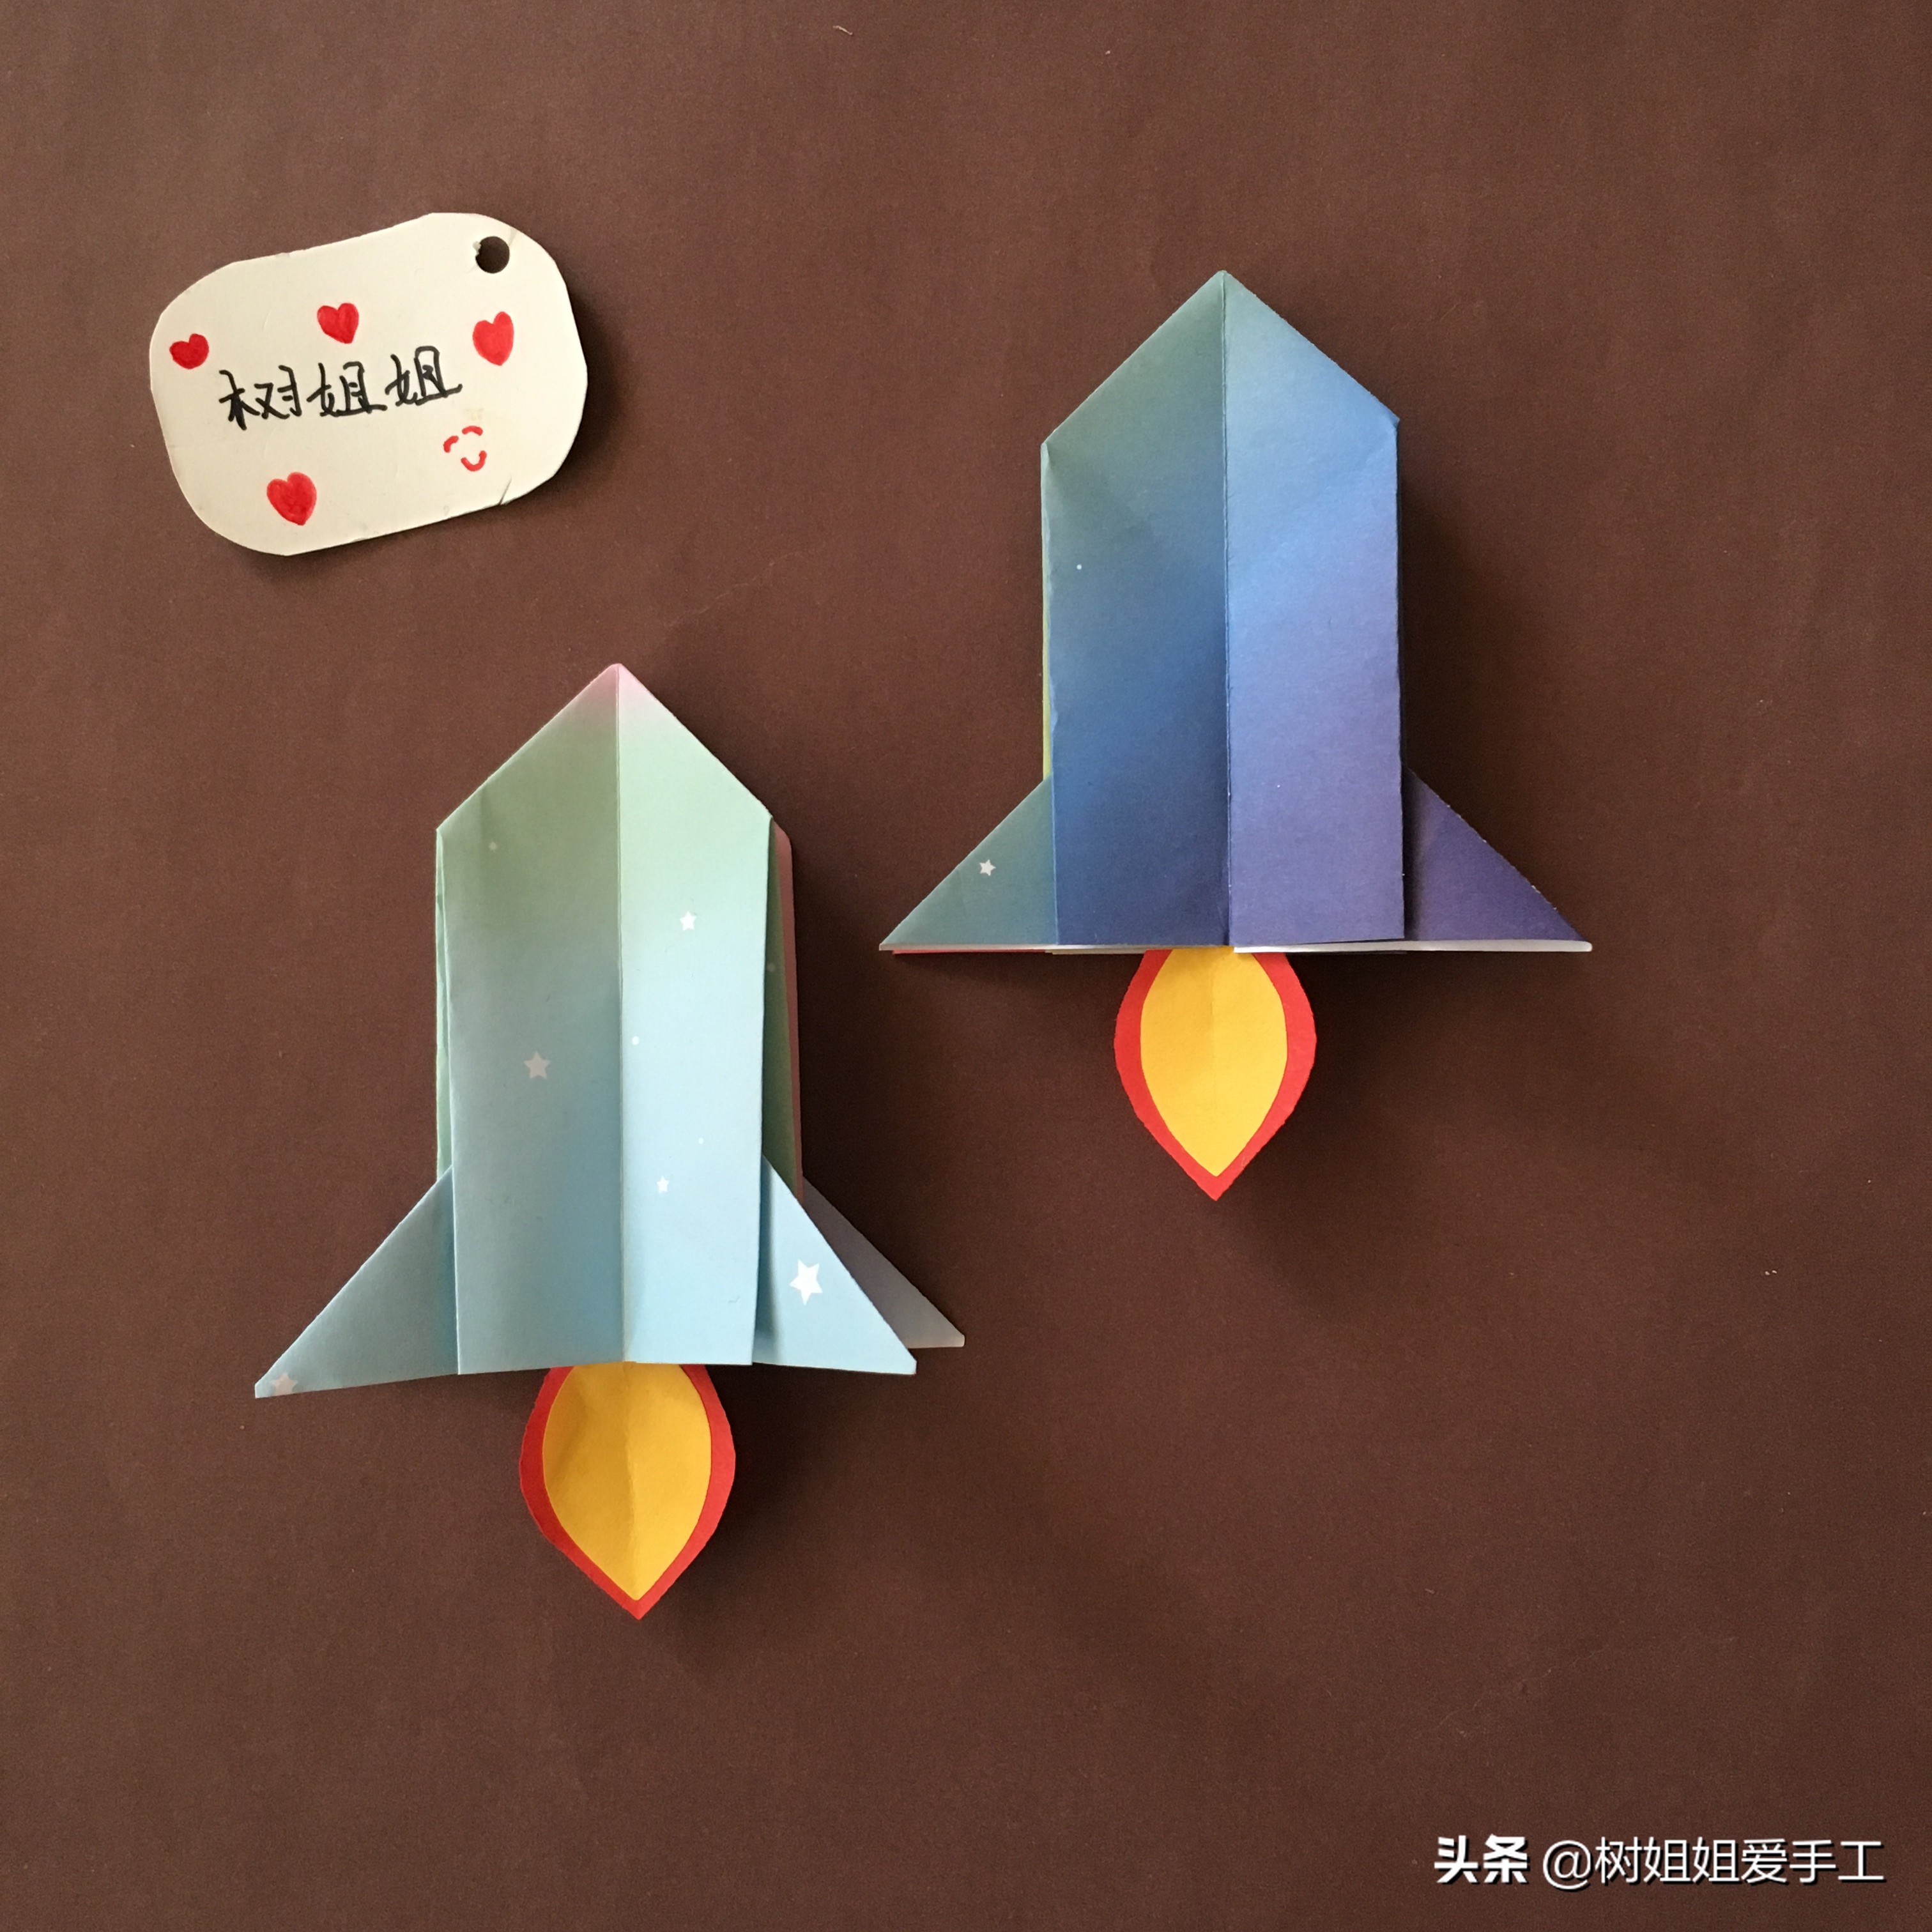 亲子折纸:火箭的折法,适合3-8岁儿童